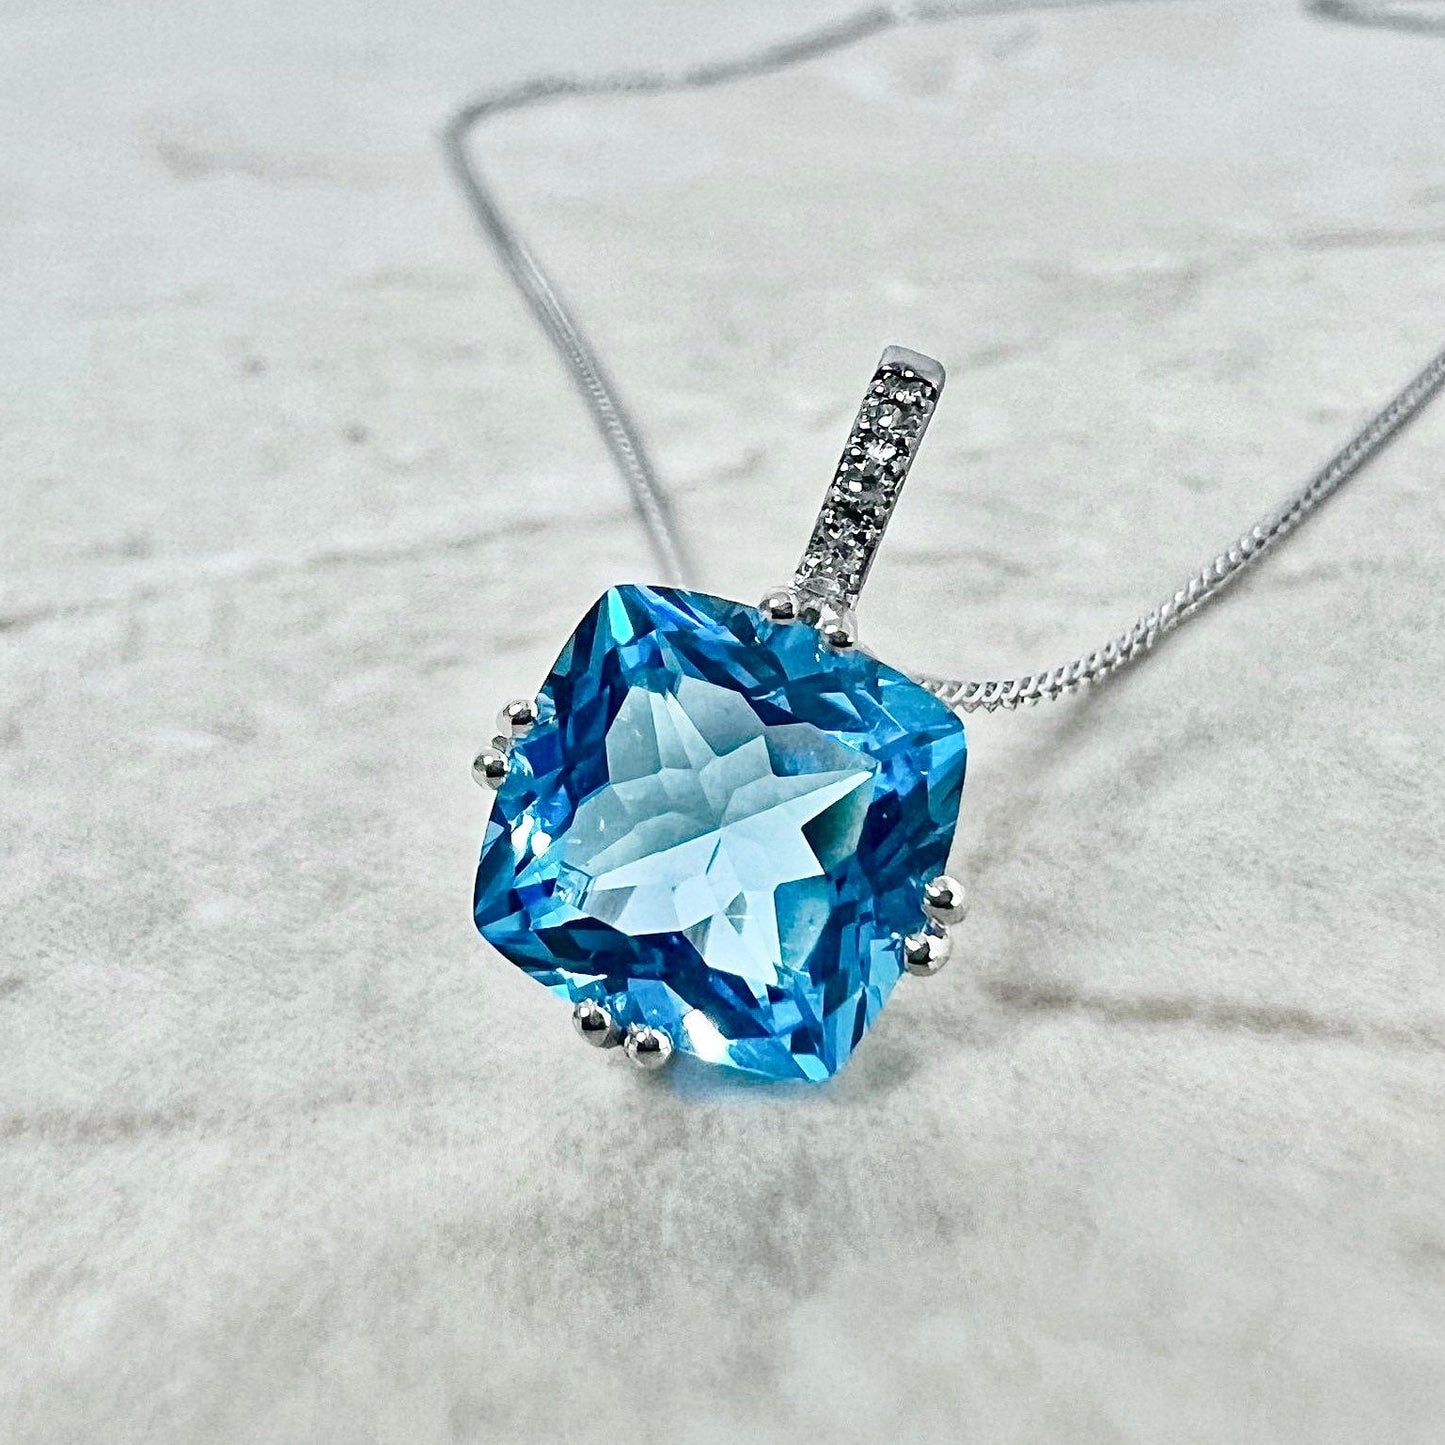 Large 14K Swiss Blue Topaz & Diamond Pendant Necklace - White Gold Topaz Pendant - November December Birthstone - Birthday Gift For Her